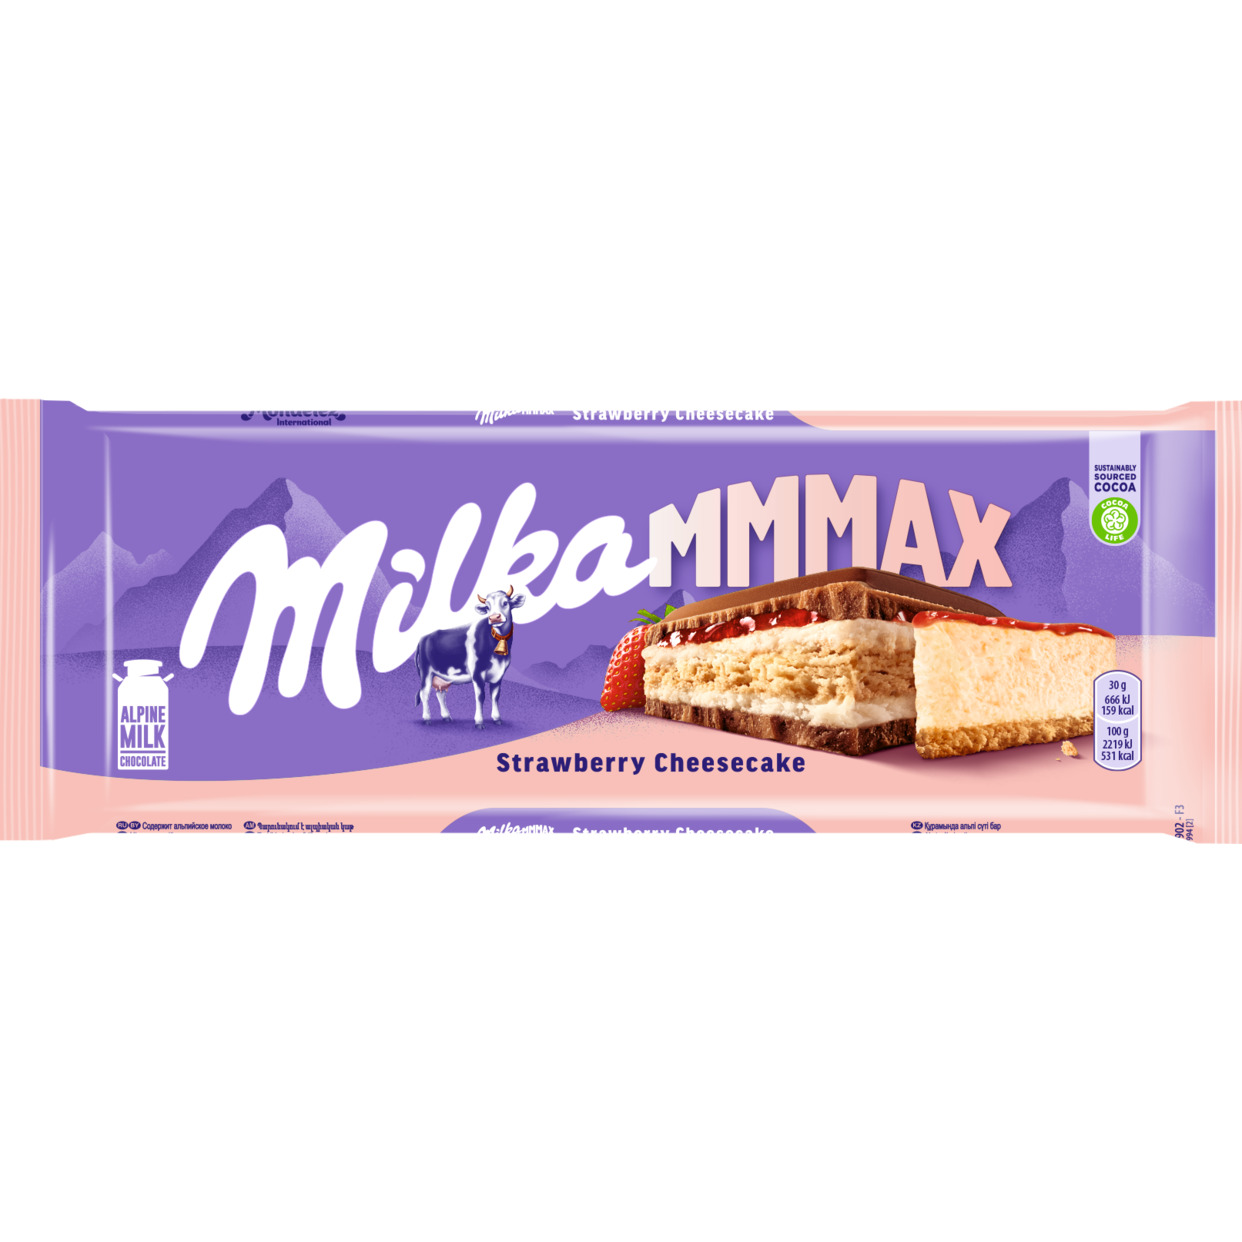 Шоколад молочный «MILKA МММАХ» (МММАКС) Strawberry Cheesecake с начинкой со вкусом чизкейка, клубничной начинкой и печеньем, 300Г по акции в Пятерочке